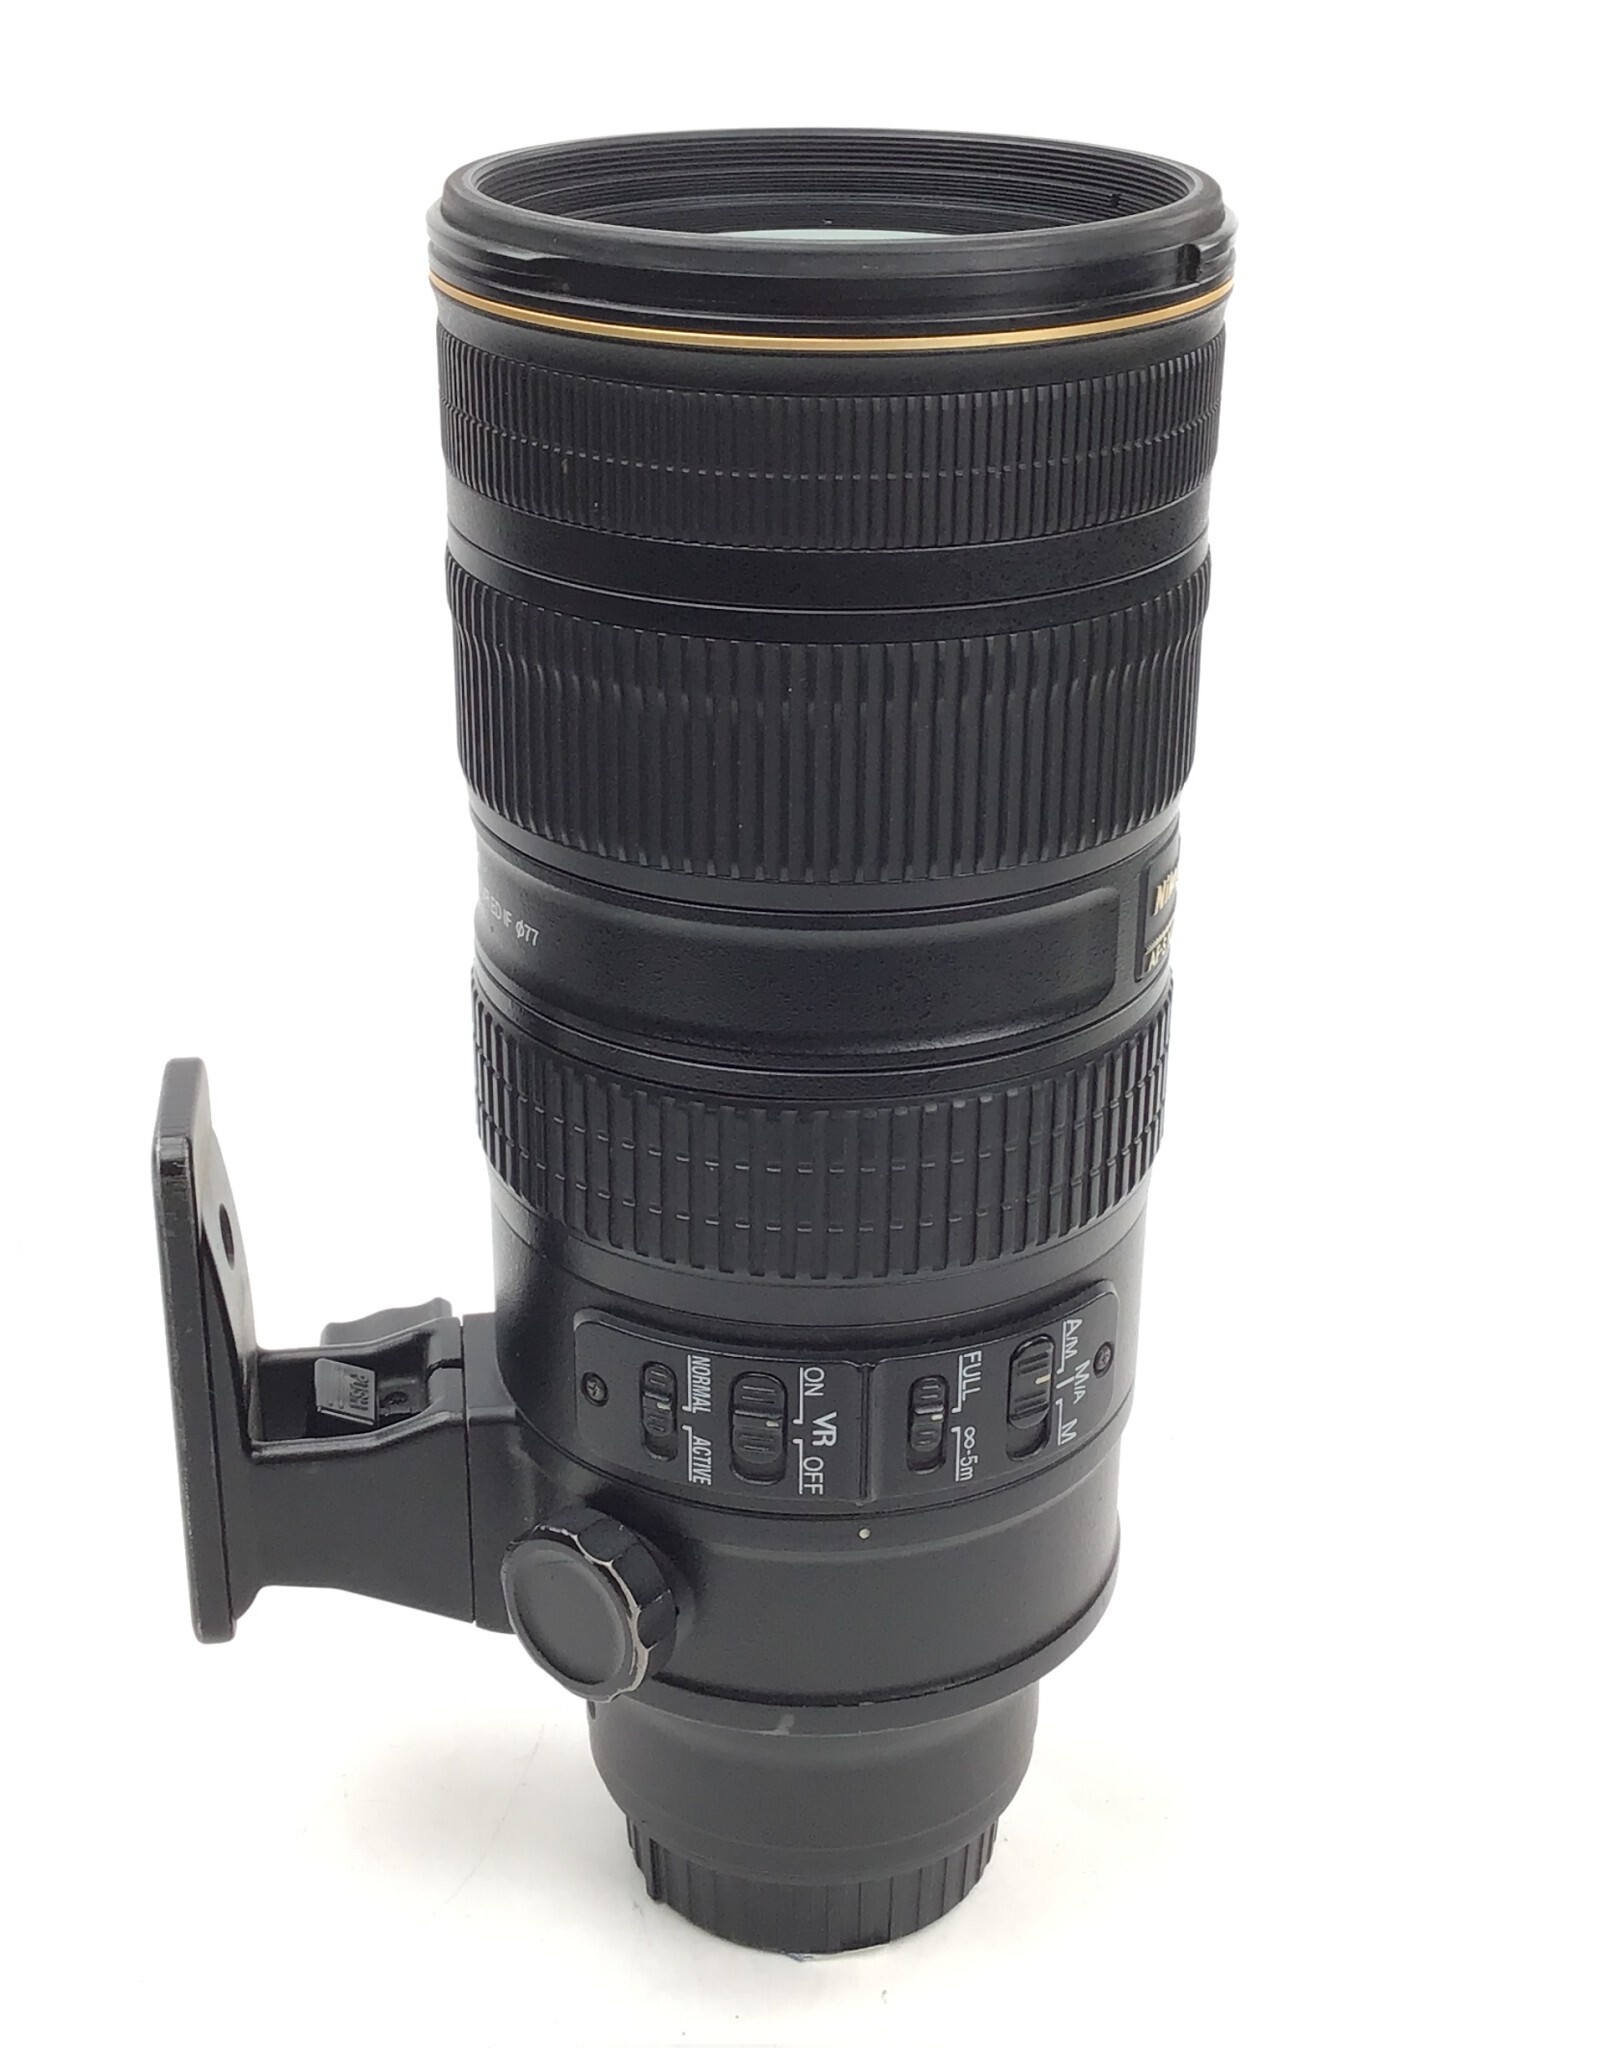 NIKON Nikon AF-S Nikkor 70-200mm f2.8G II VR Lens Used Good